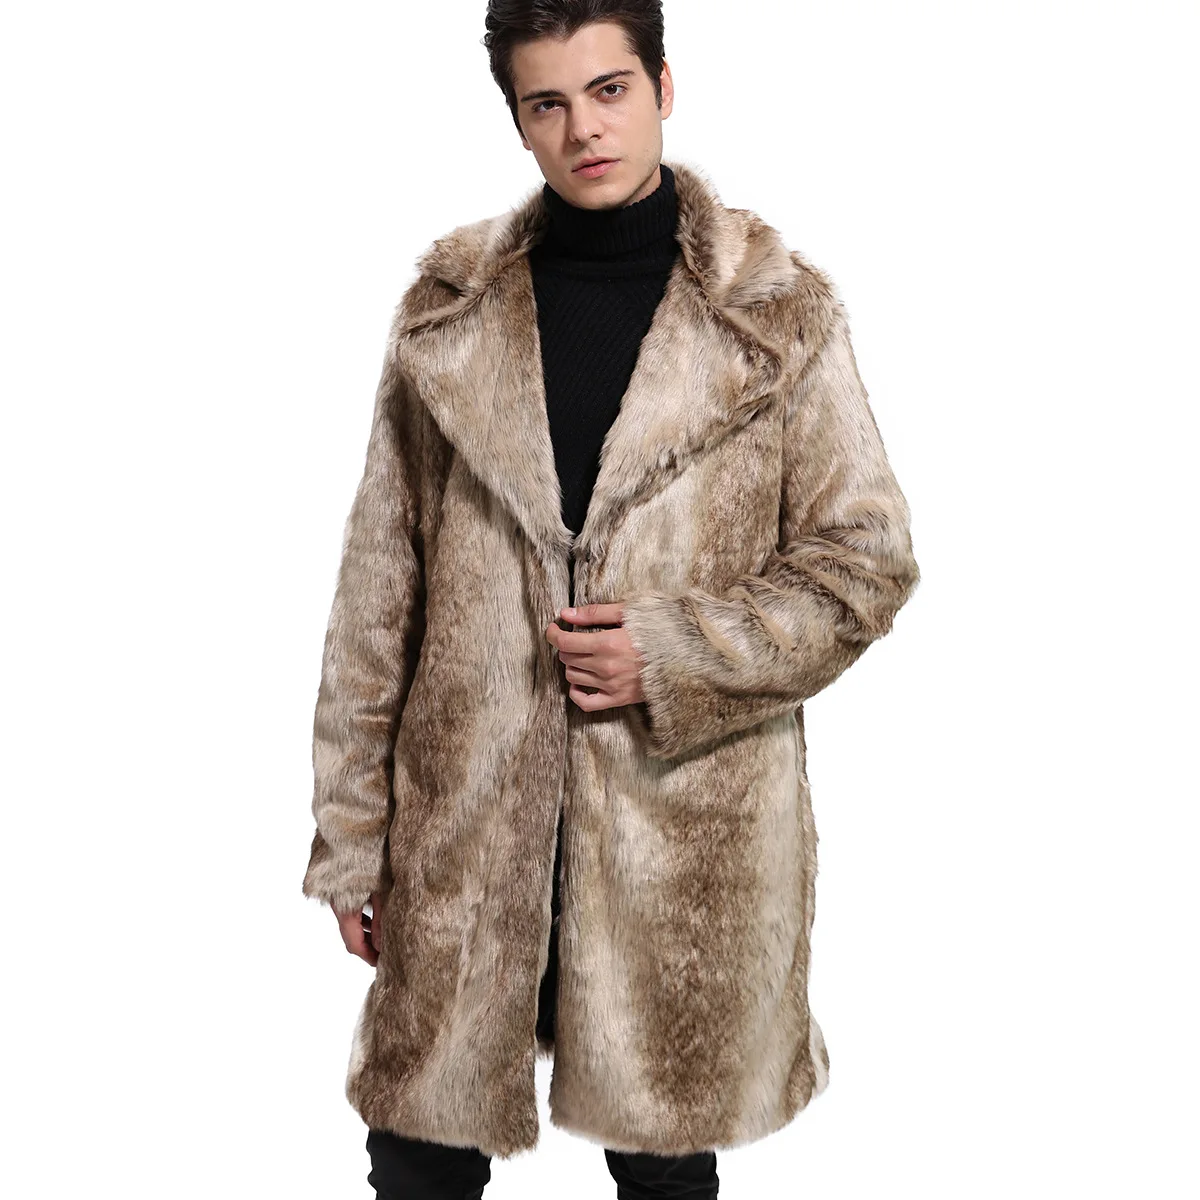 Мужское меховое пальто, зимняя теплая верхняя одежда, пальто из искусственного меха, Мужская парка в стиле панк, куртки Hombre, толстое кожаное пальто из натурального меха, брендовая одежда